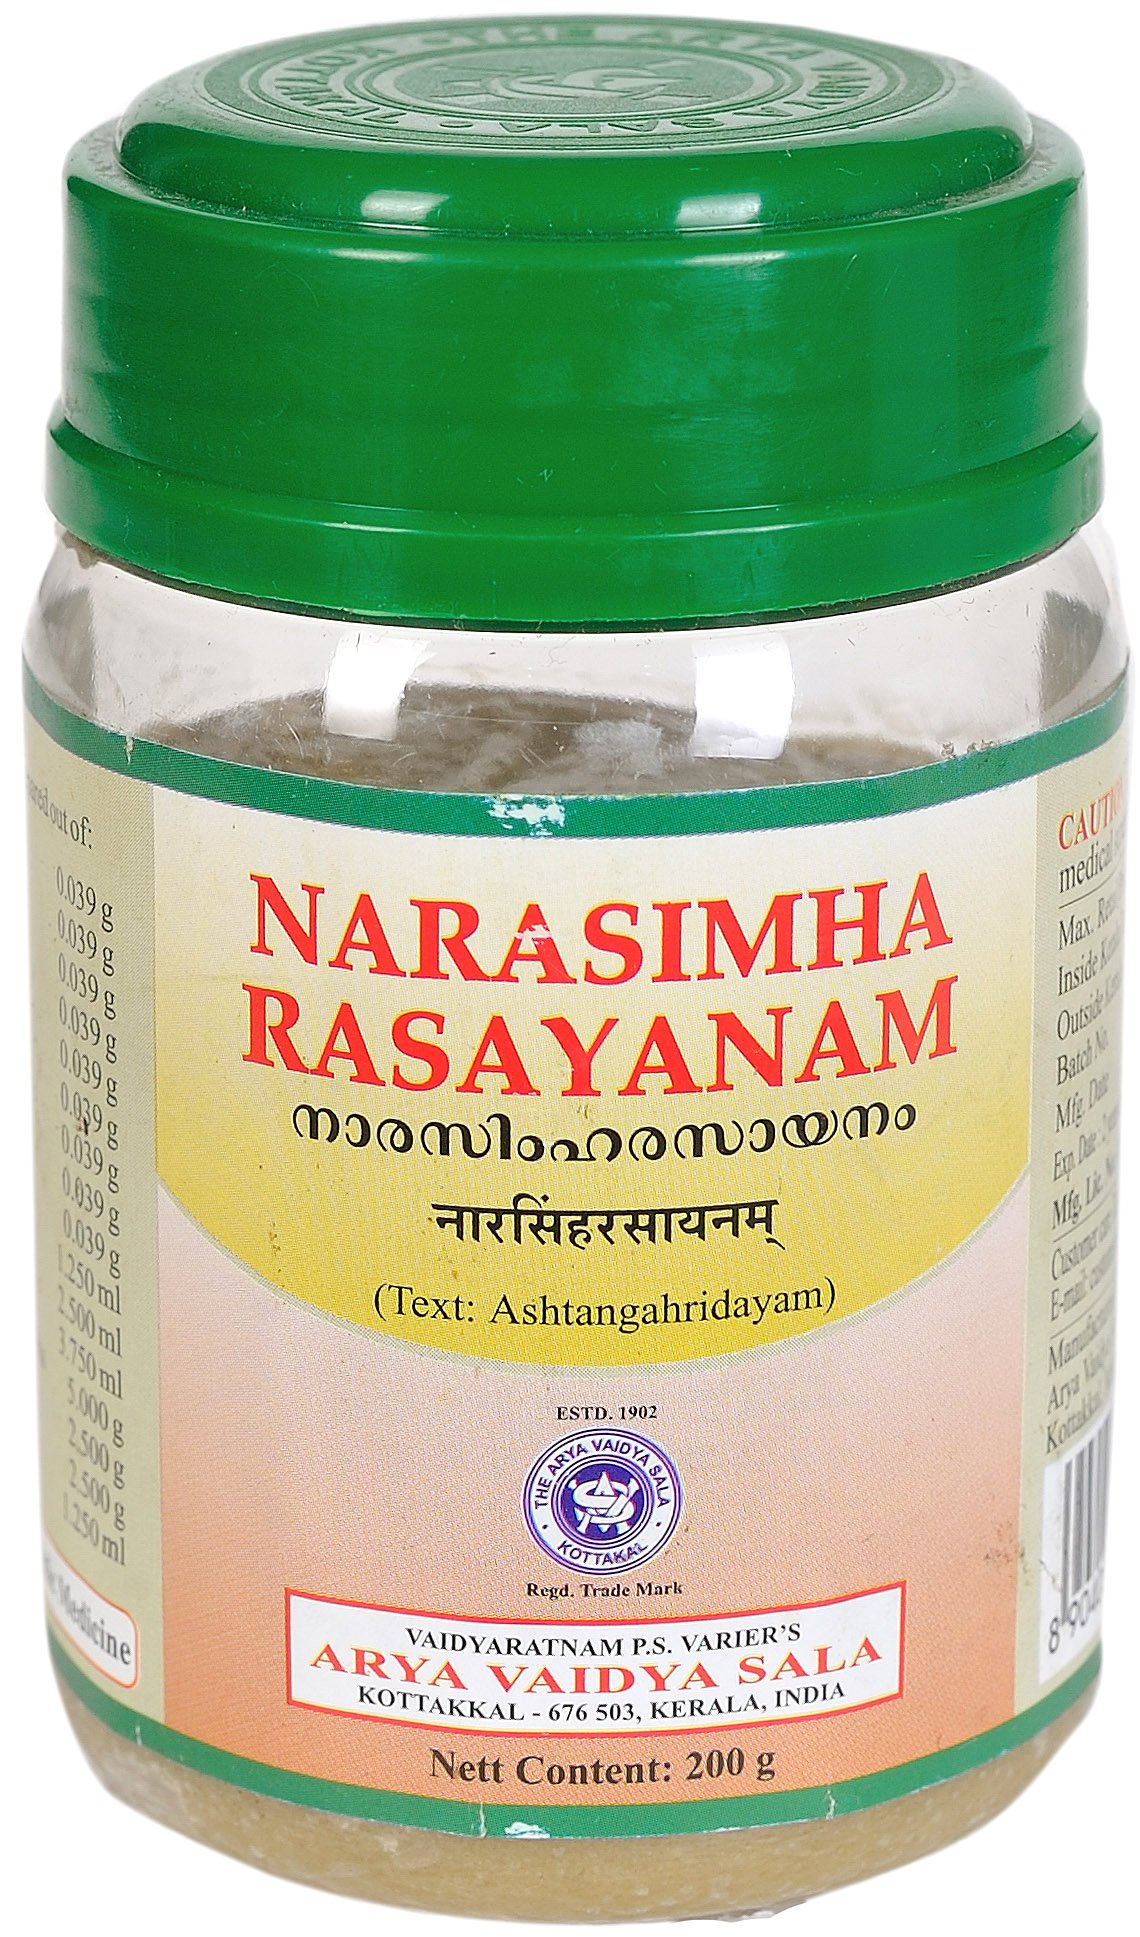 Narasimha Rasayanam - book cover